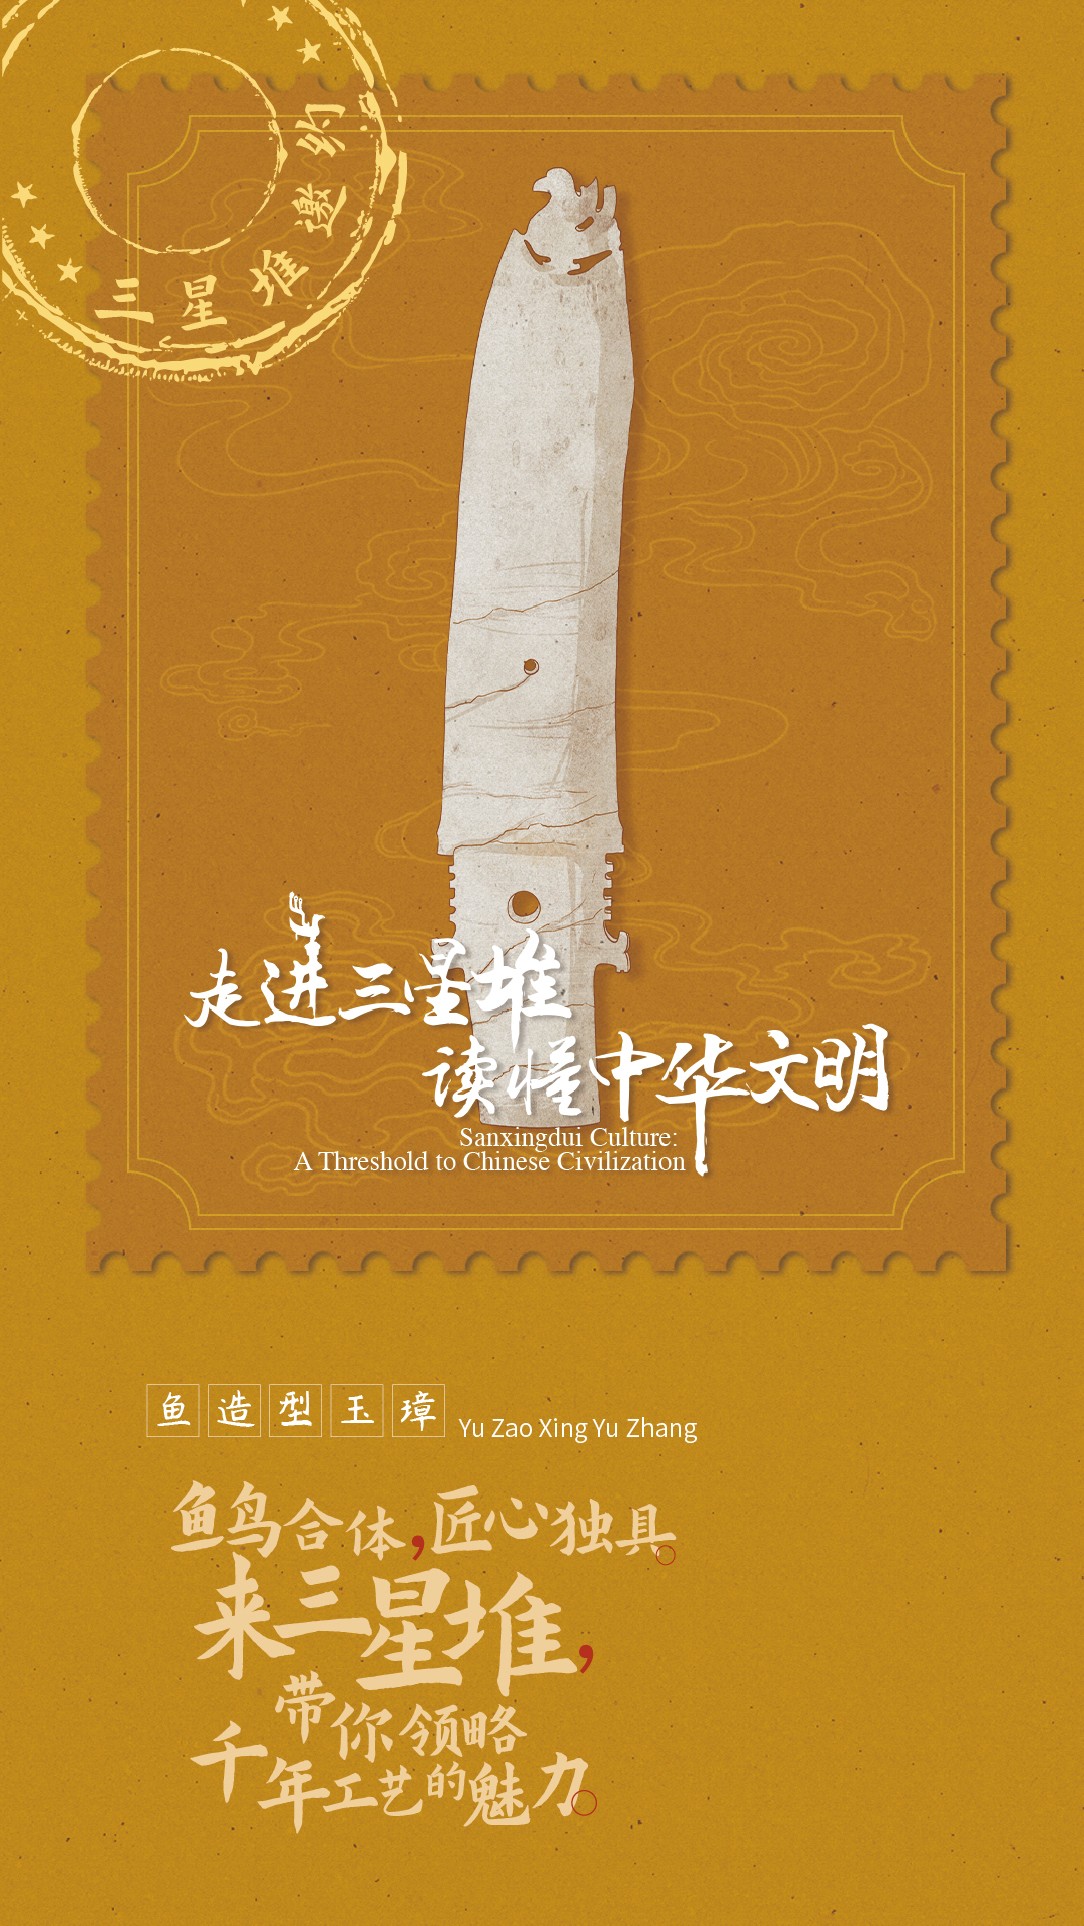 国家文物局,四川省人民政府将在四川省广汉市的三星堆博物馆联合举办"